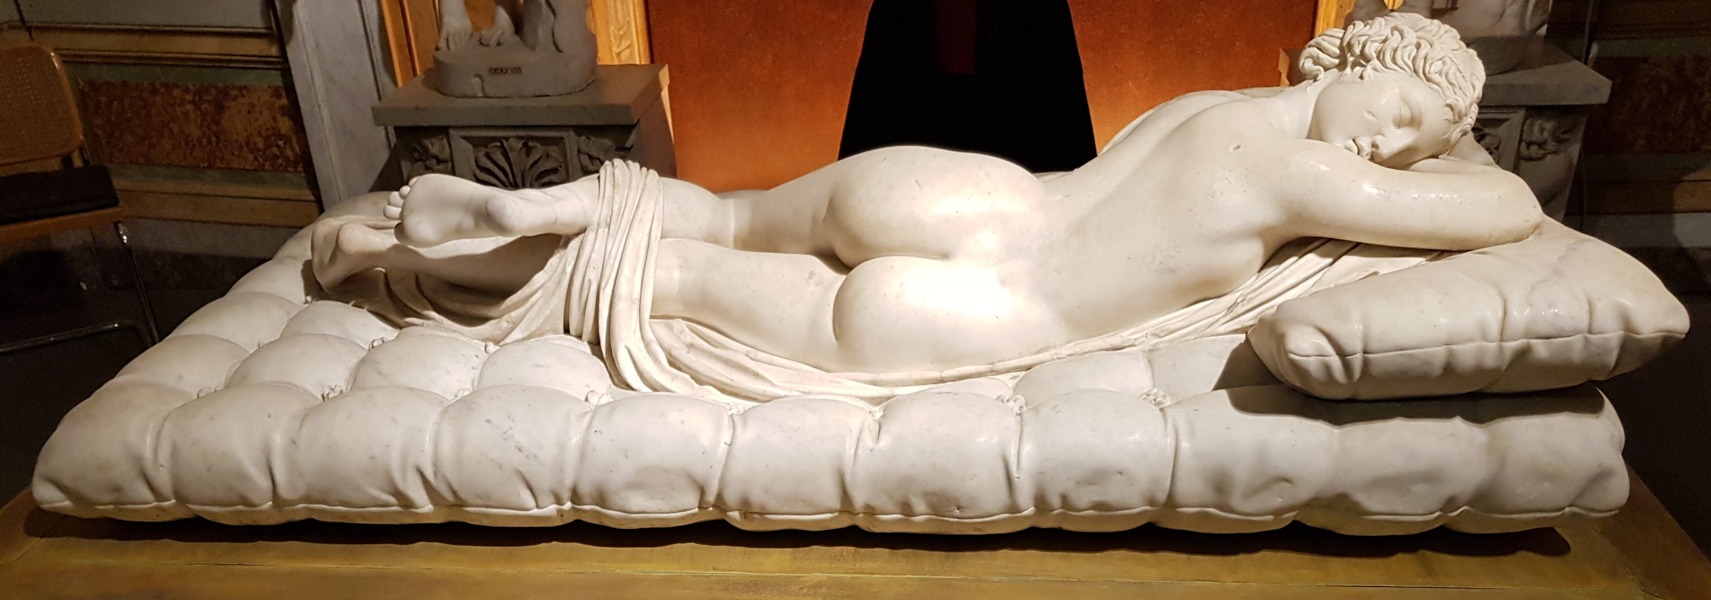 Storie del Louvre. Bernini, Ermafrodito